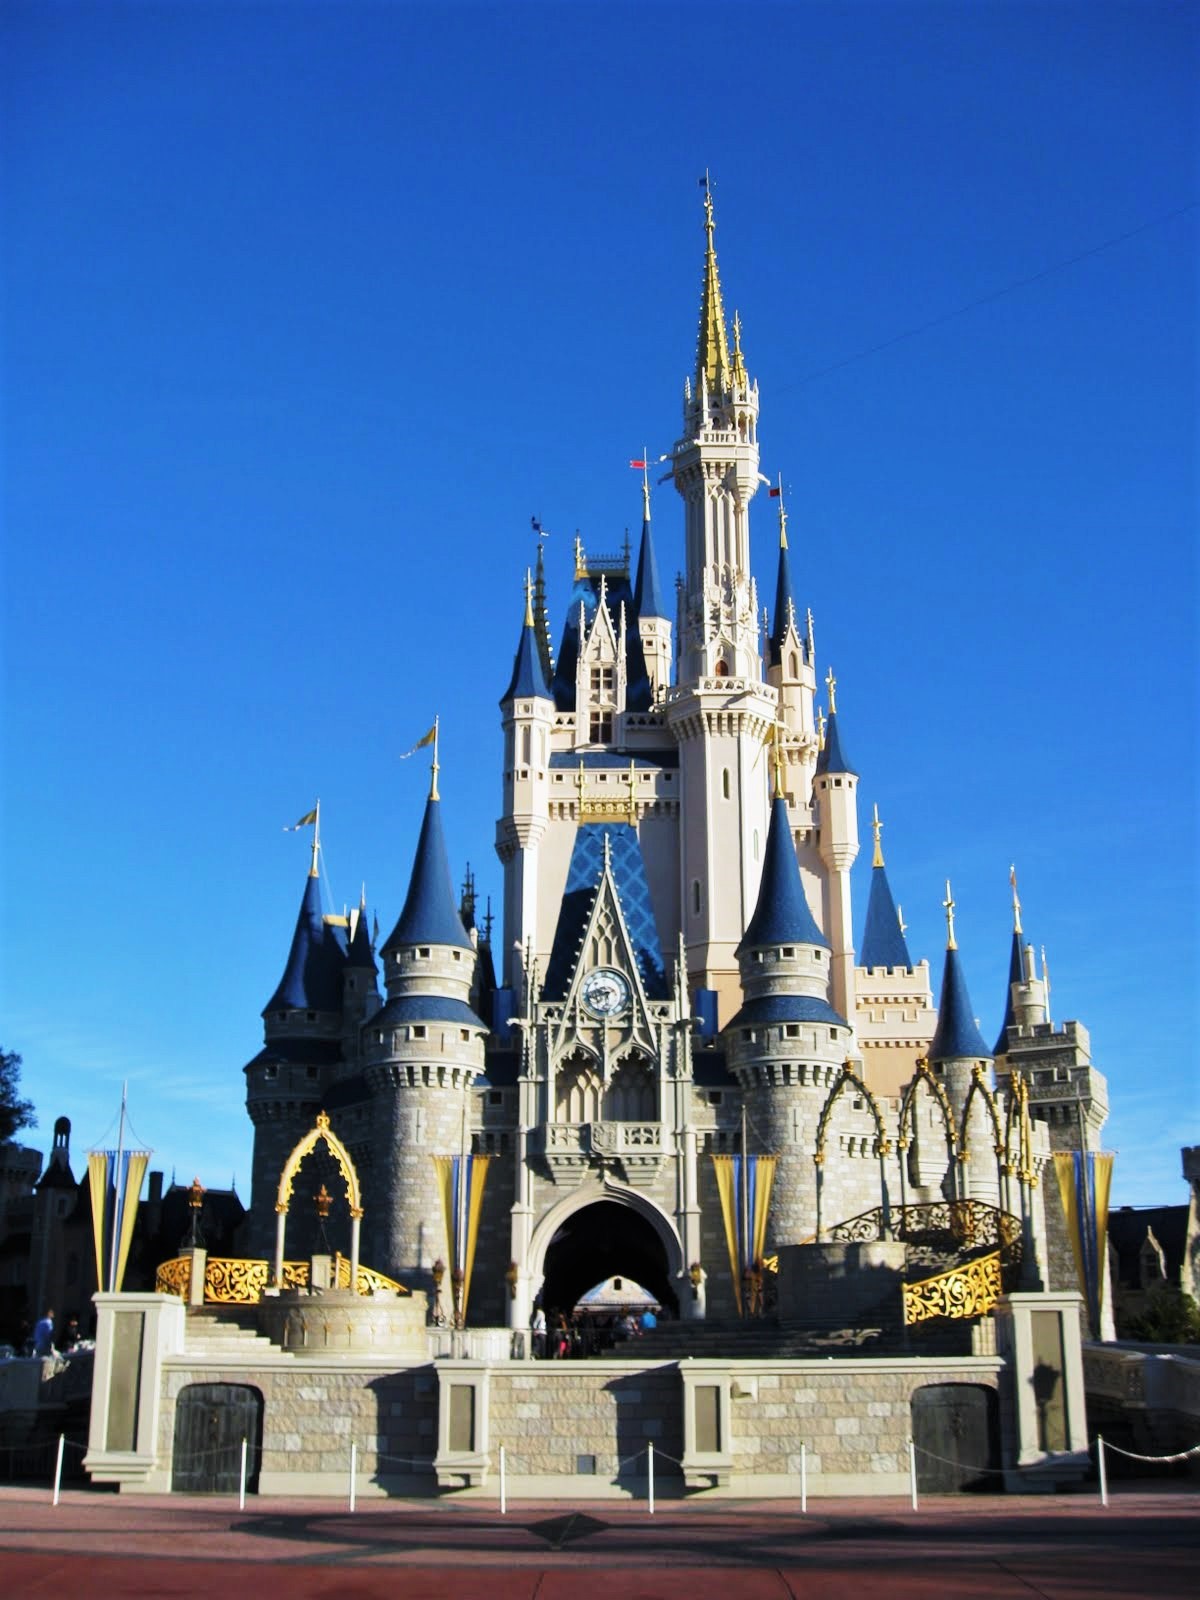 Cinderella Castle | Disney Wiki | FANDOM powered by Wikia